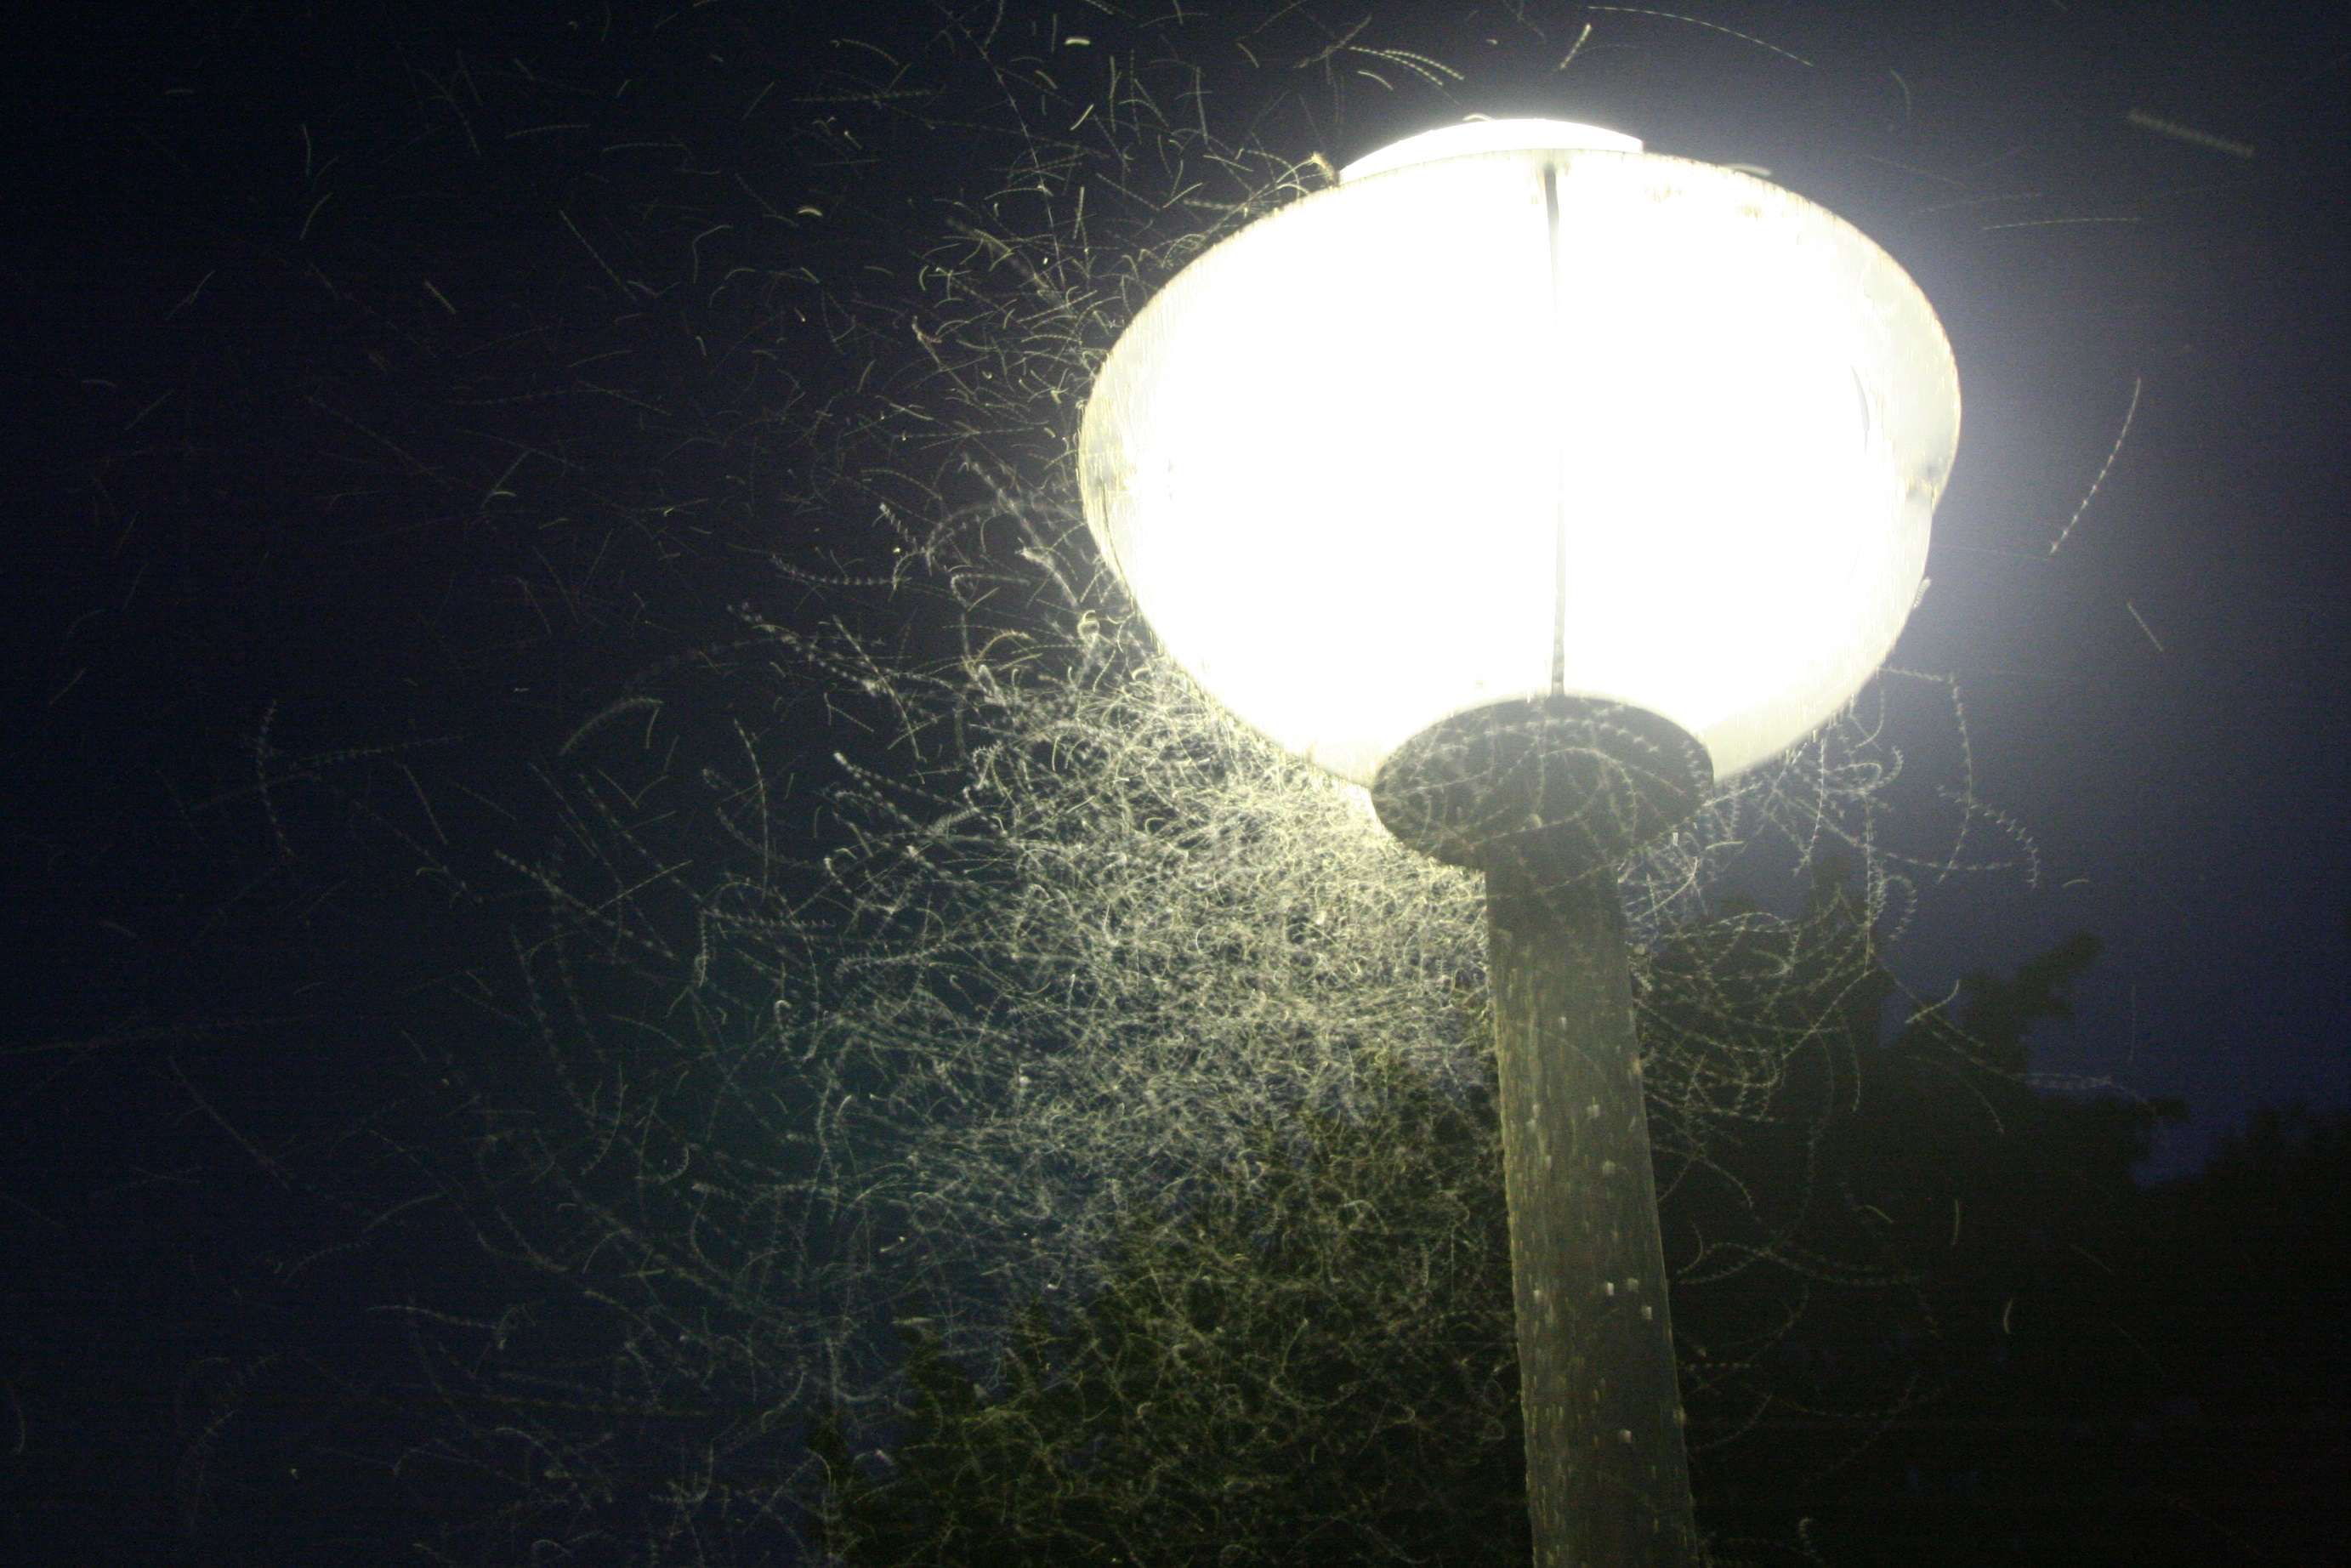 Kombinace nevhodného tvaru difusoru a studené barvy světla vyzařovaného lampami veřejného osvětlení ovlivňuje společenstva hmyzu v širokém okolí. Foto: Jan Kondziolka